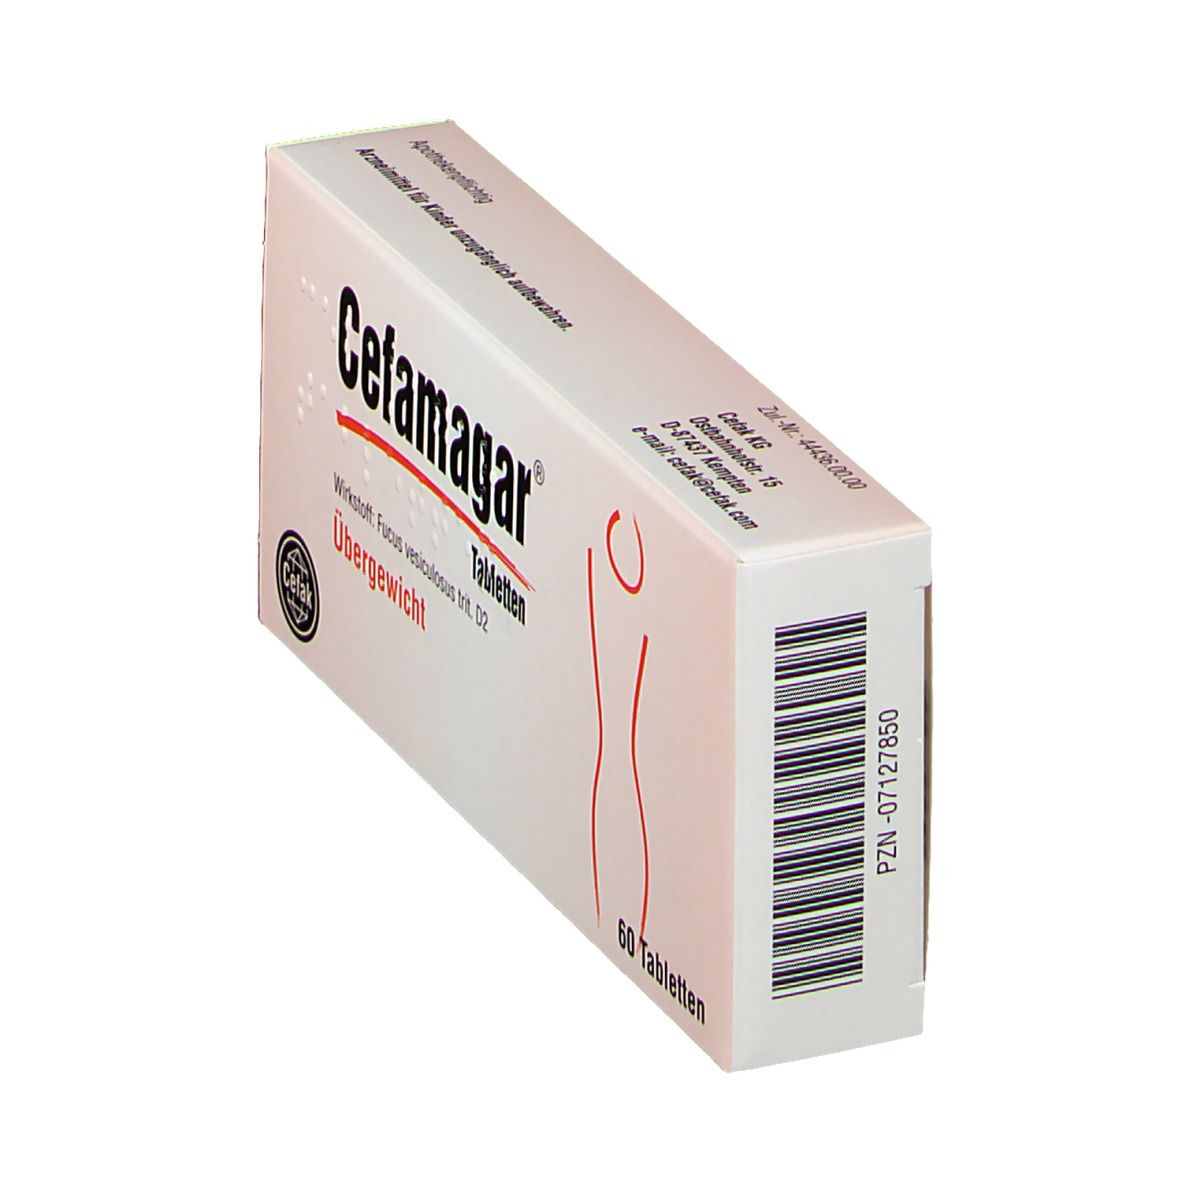 Cefamagar® Tabletten